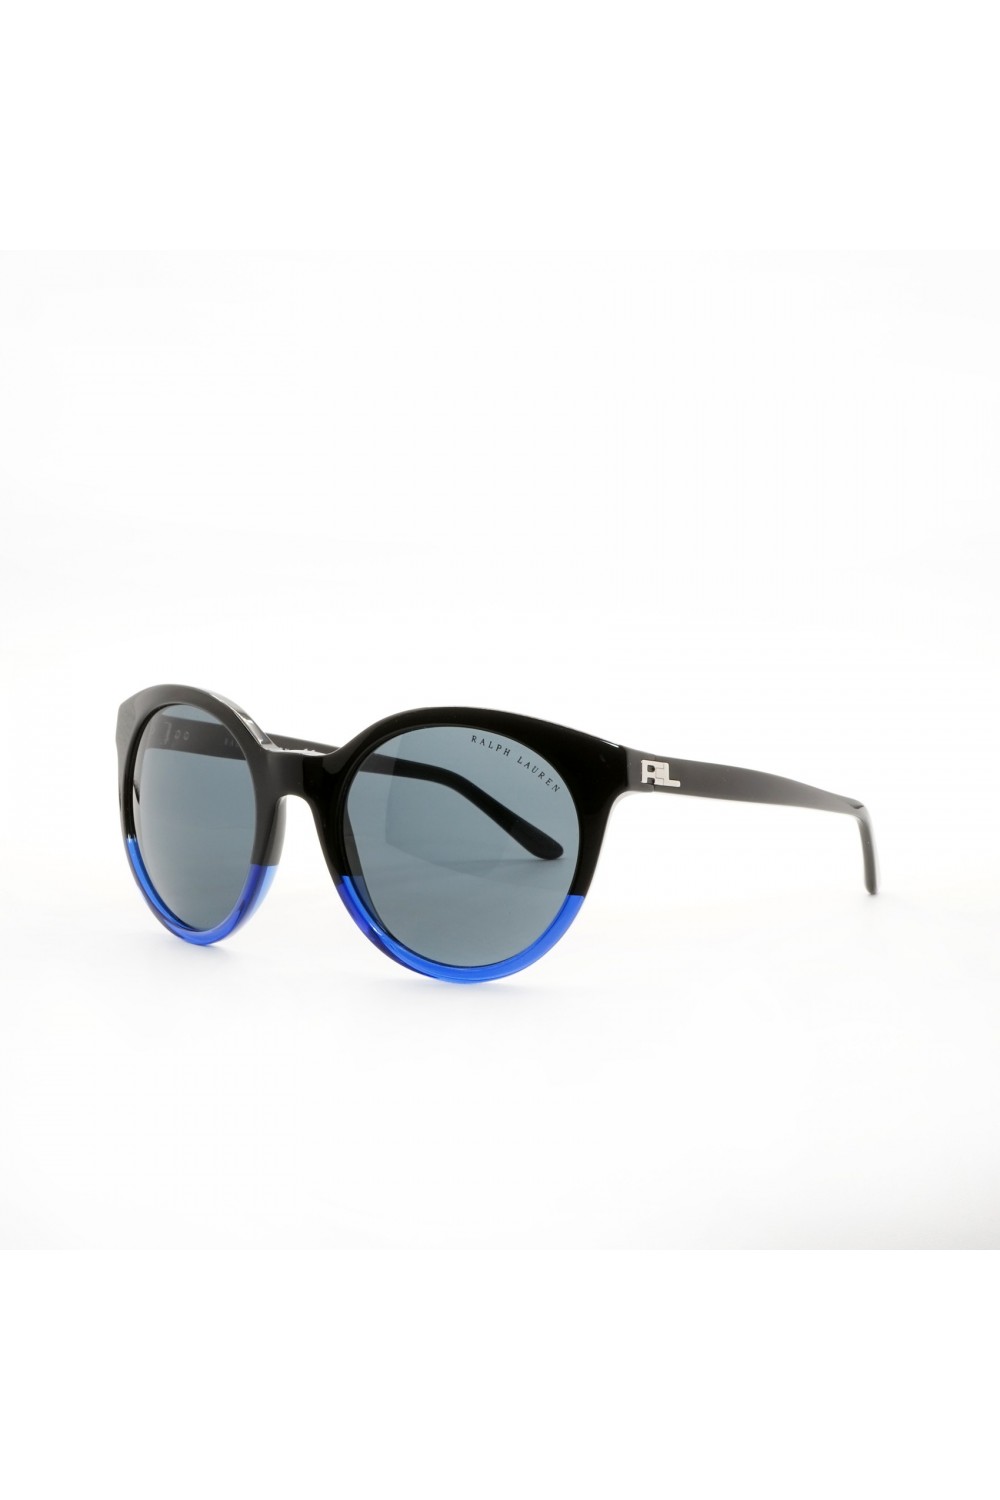 Ralph Lauren - Occhiali da sole in celluloide tondi per donna nero/blu - RL8138